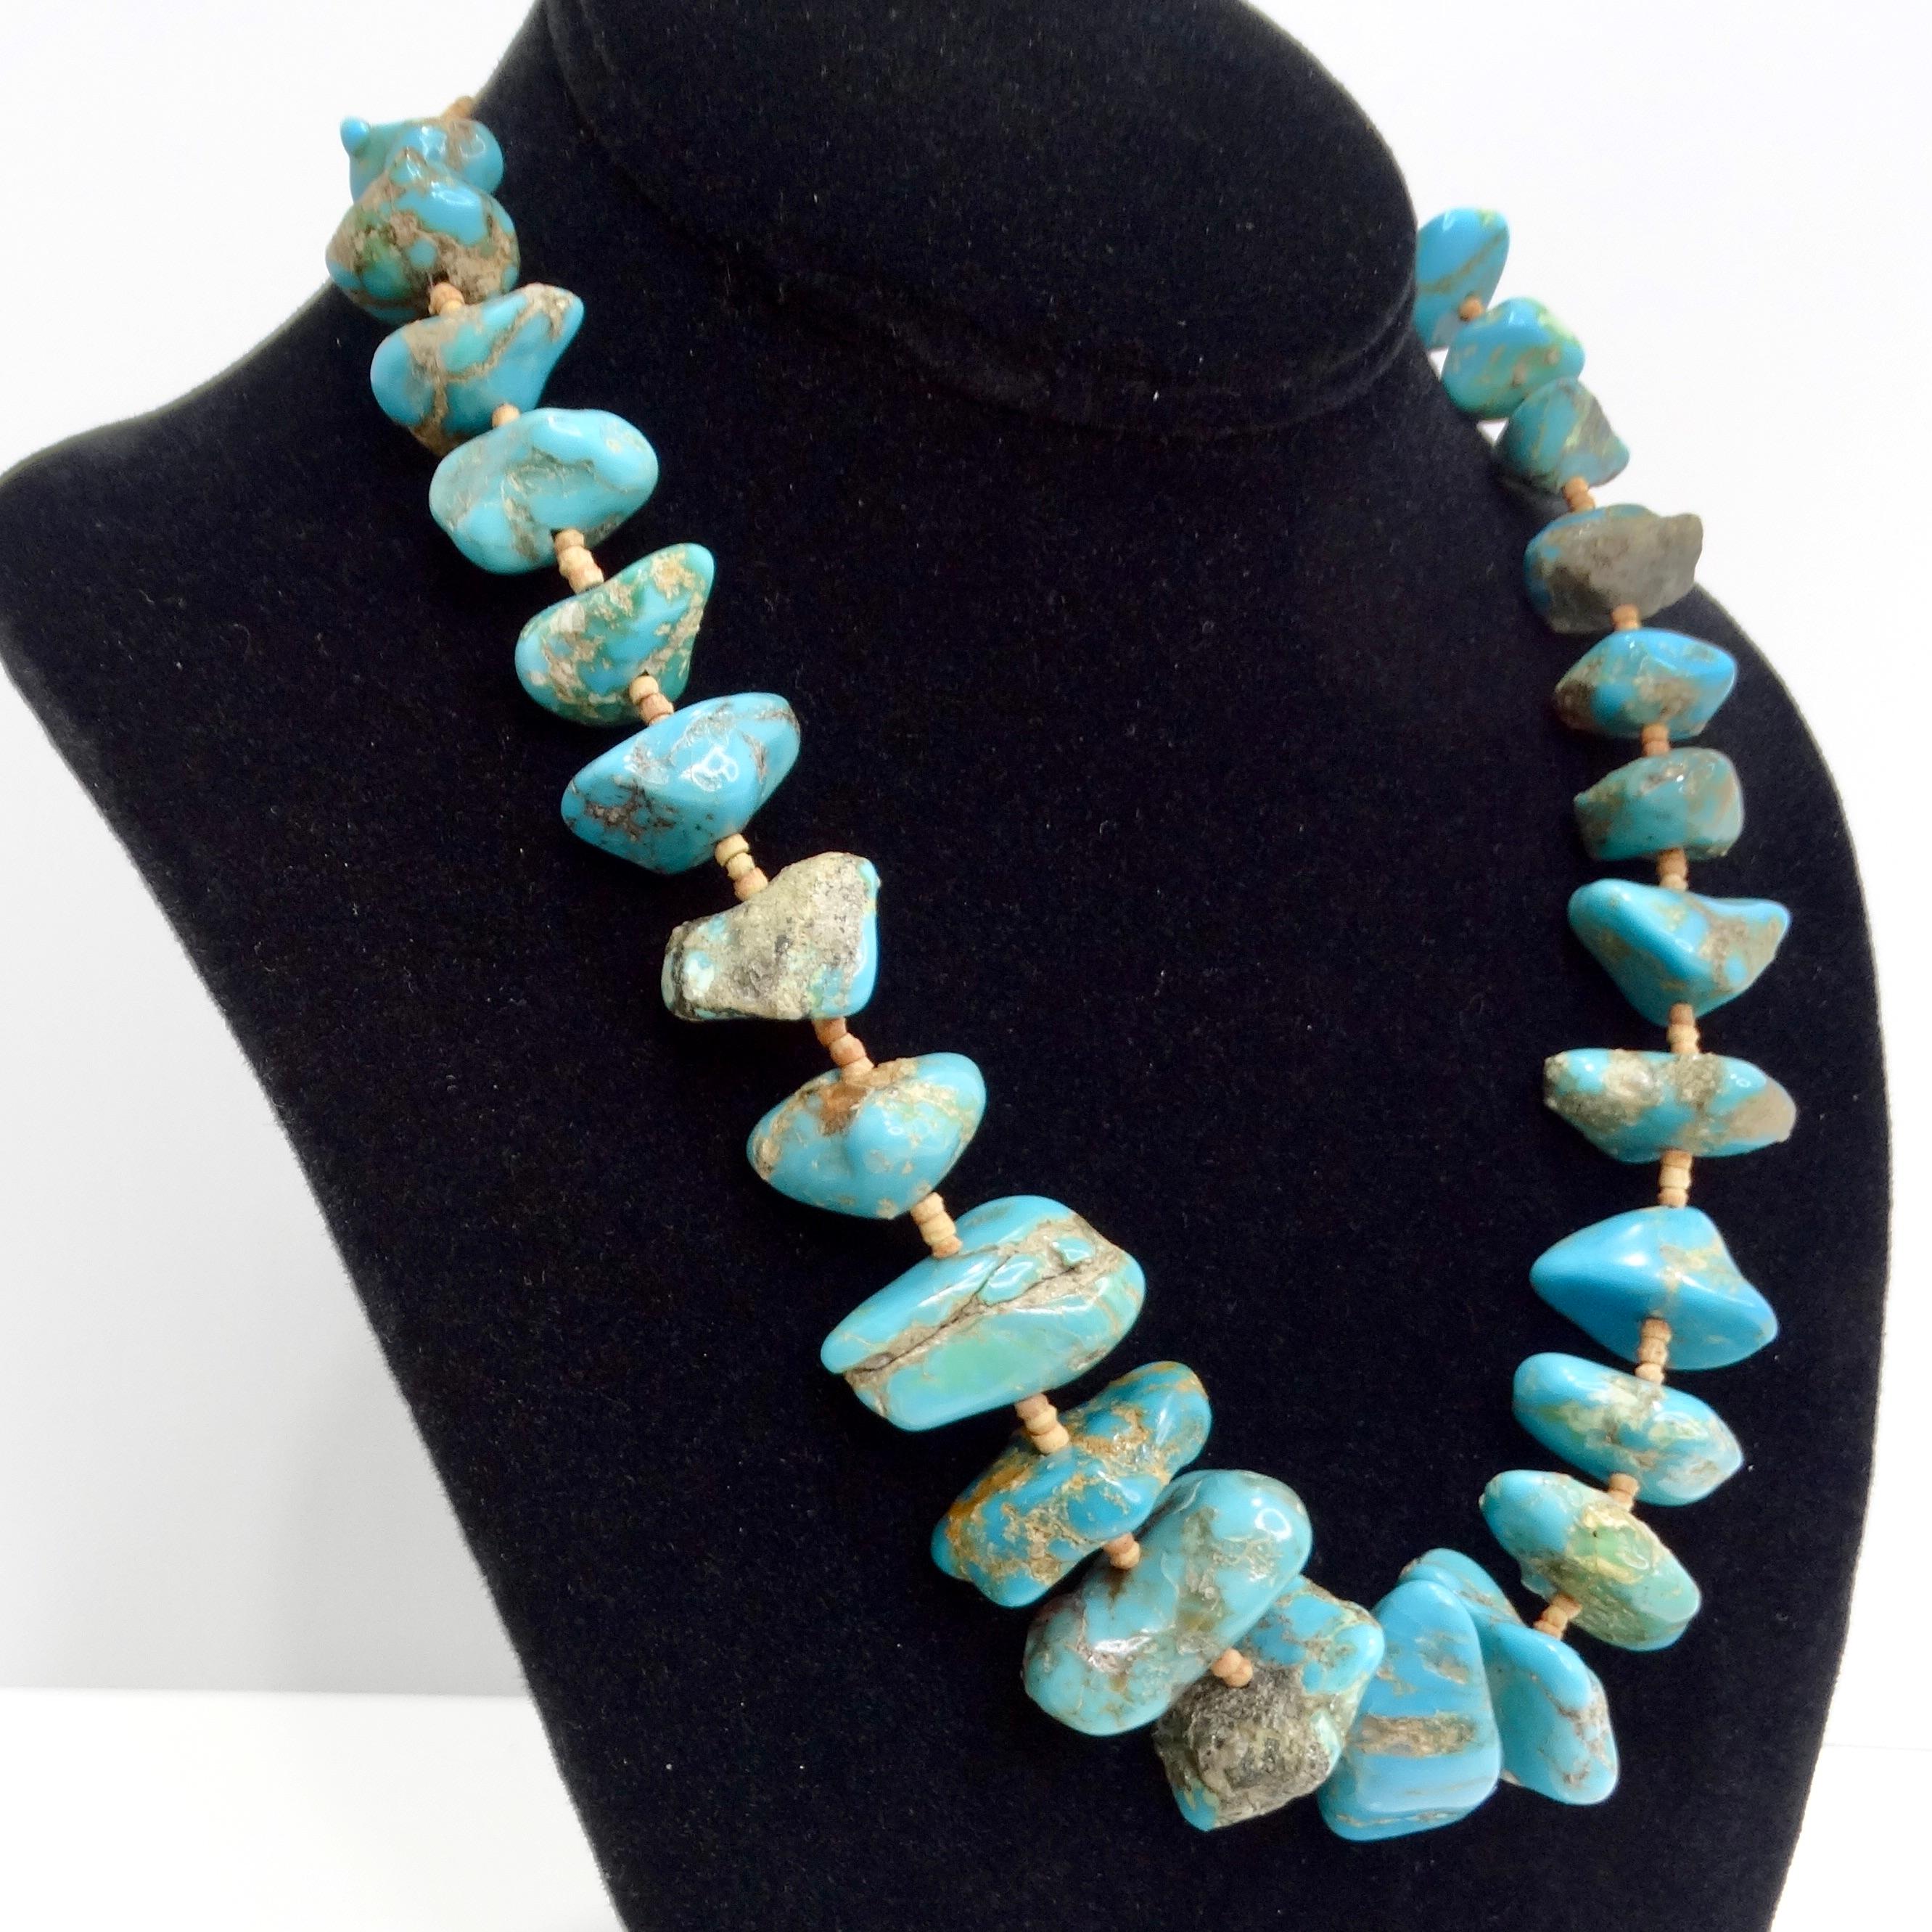 Le collier de turquoise Navajo des années 1960 est une pièce vintage saisissante qui capture l'essence de l'artisanat Navajo et du style audacieux du Sud-Ouest. Ce magnifique collier présente des pierres bleu turquoise vibrantes, chacune avec des